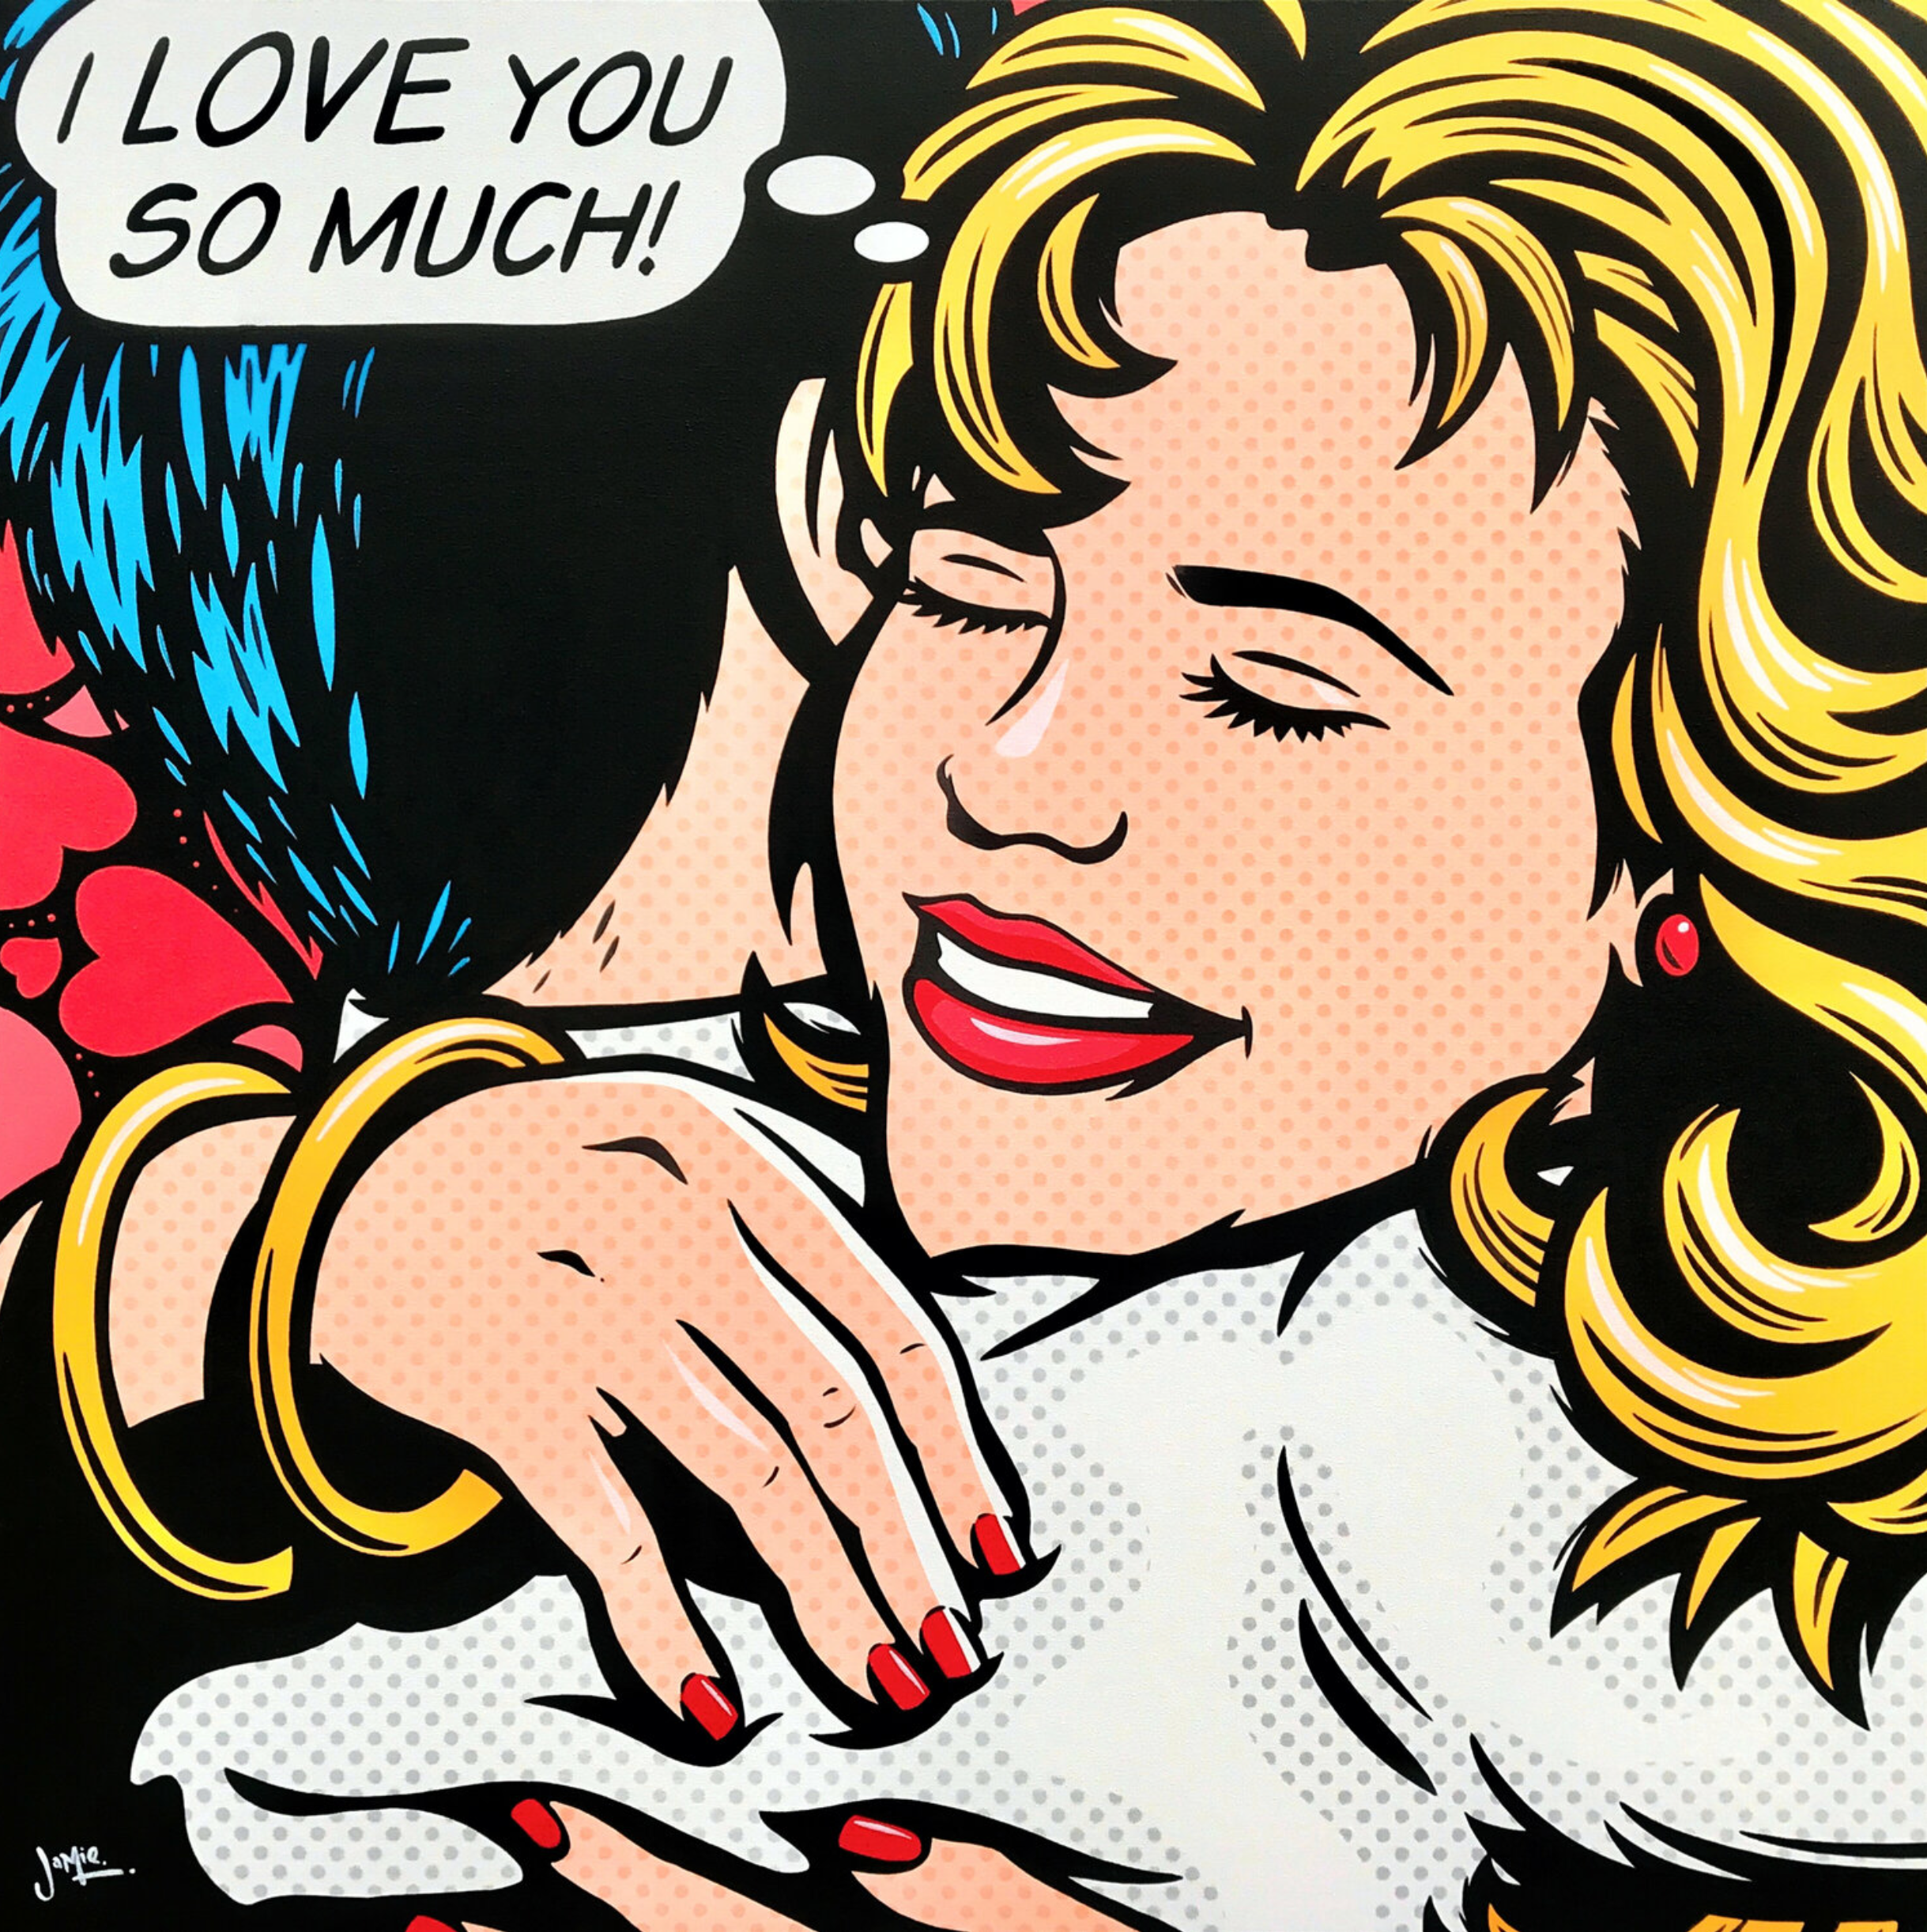 杰米-李的《我爱你》漫画风格的流行艺术画。  原创设计，手绘流行艺术。一对年轻夫妇在爱的怀抱中，有一个思想的气泡--"我很爱你"。但谁在想它？她，他，也许都是？